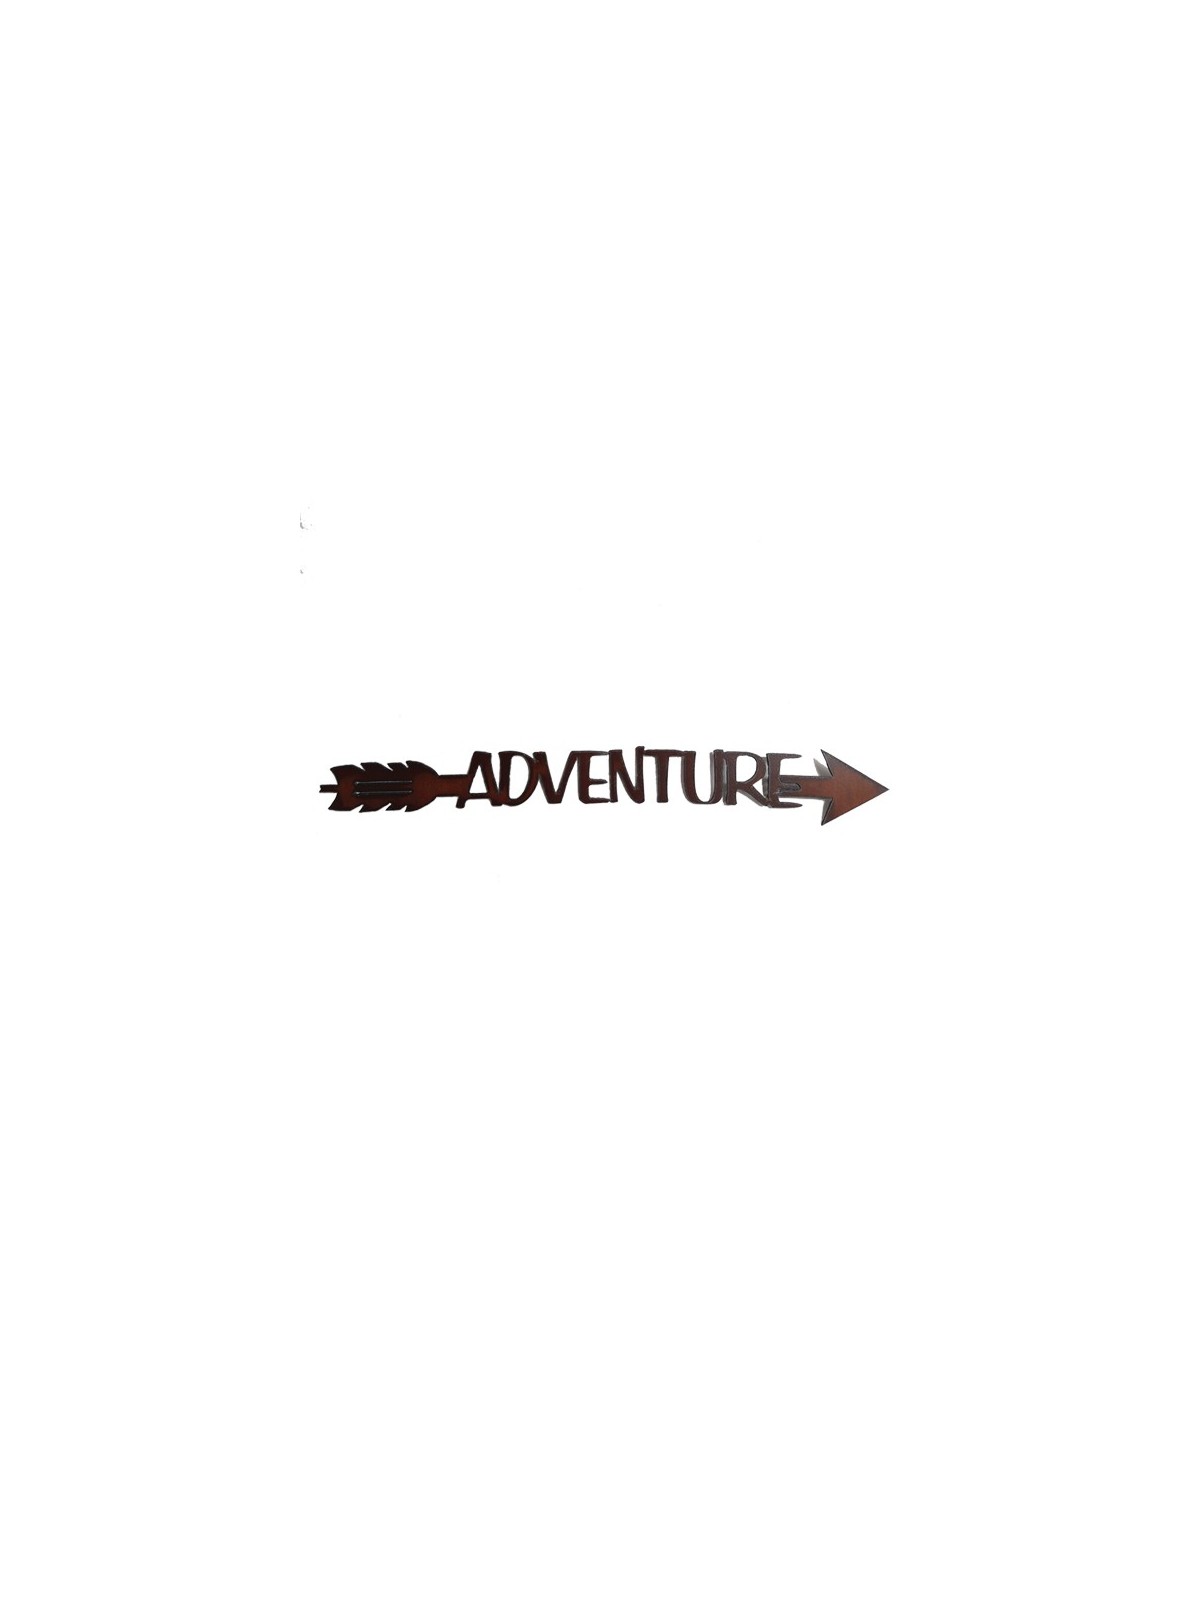 Adventure Arrow Signs